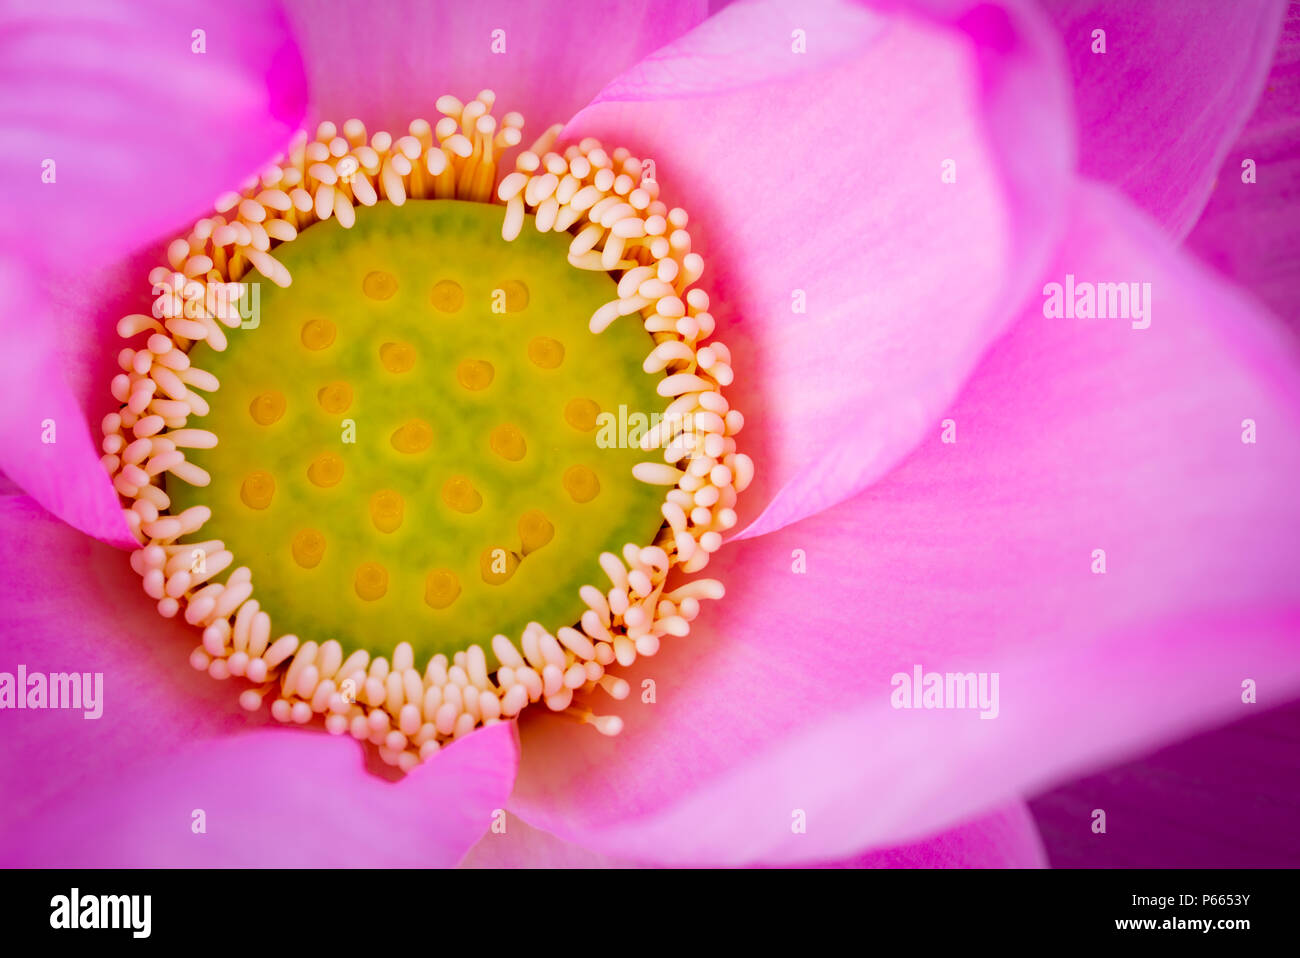 Vista superiore della rosa fiore di loto. Nel buddismo il lotus è nota per essere associata con la purezza, il risveglio spirituale e la fedeltà. Pianta acquatica. Foto Stock